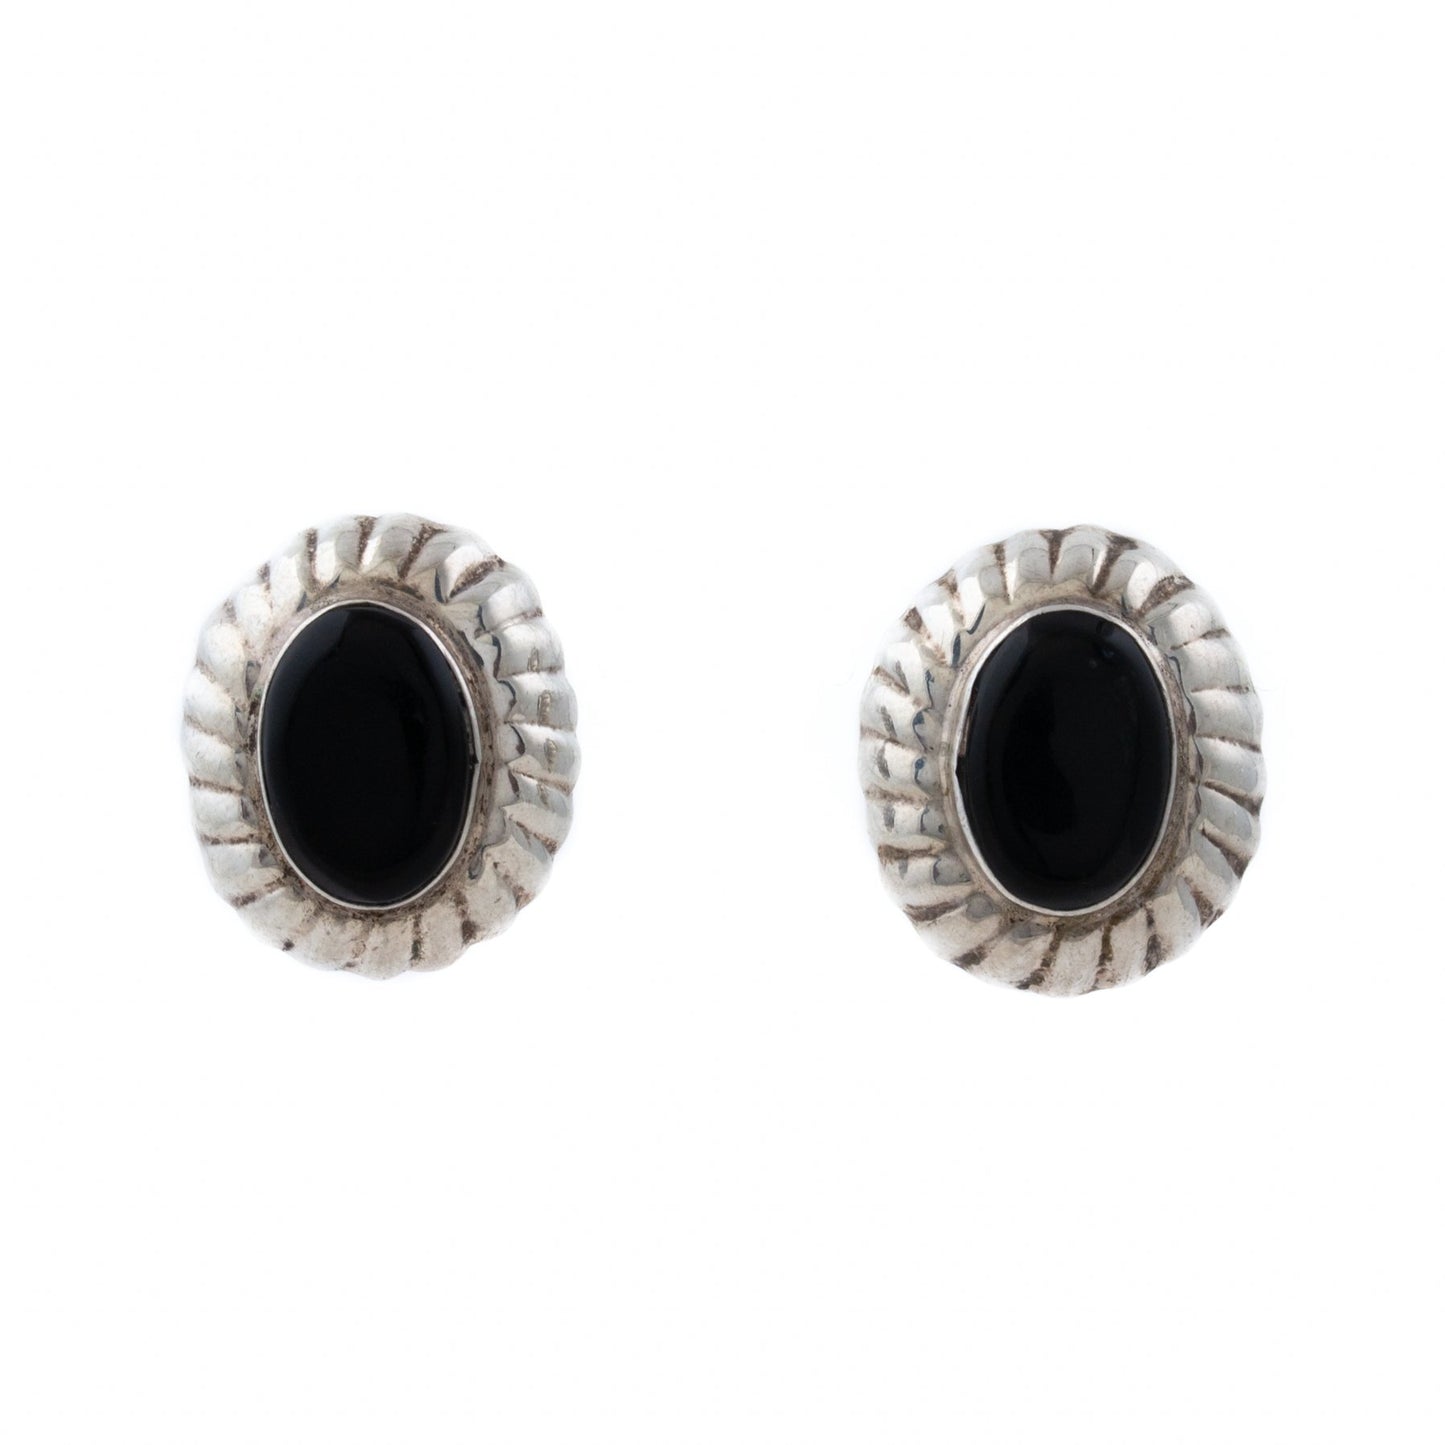 Taxco Onyx Sterling Silver Earrings - Kingdom Jewelry